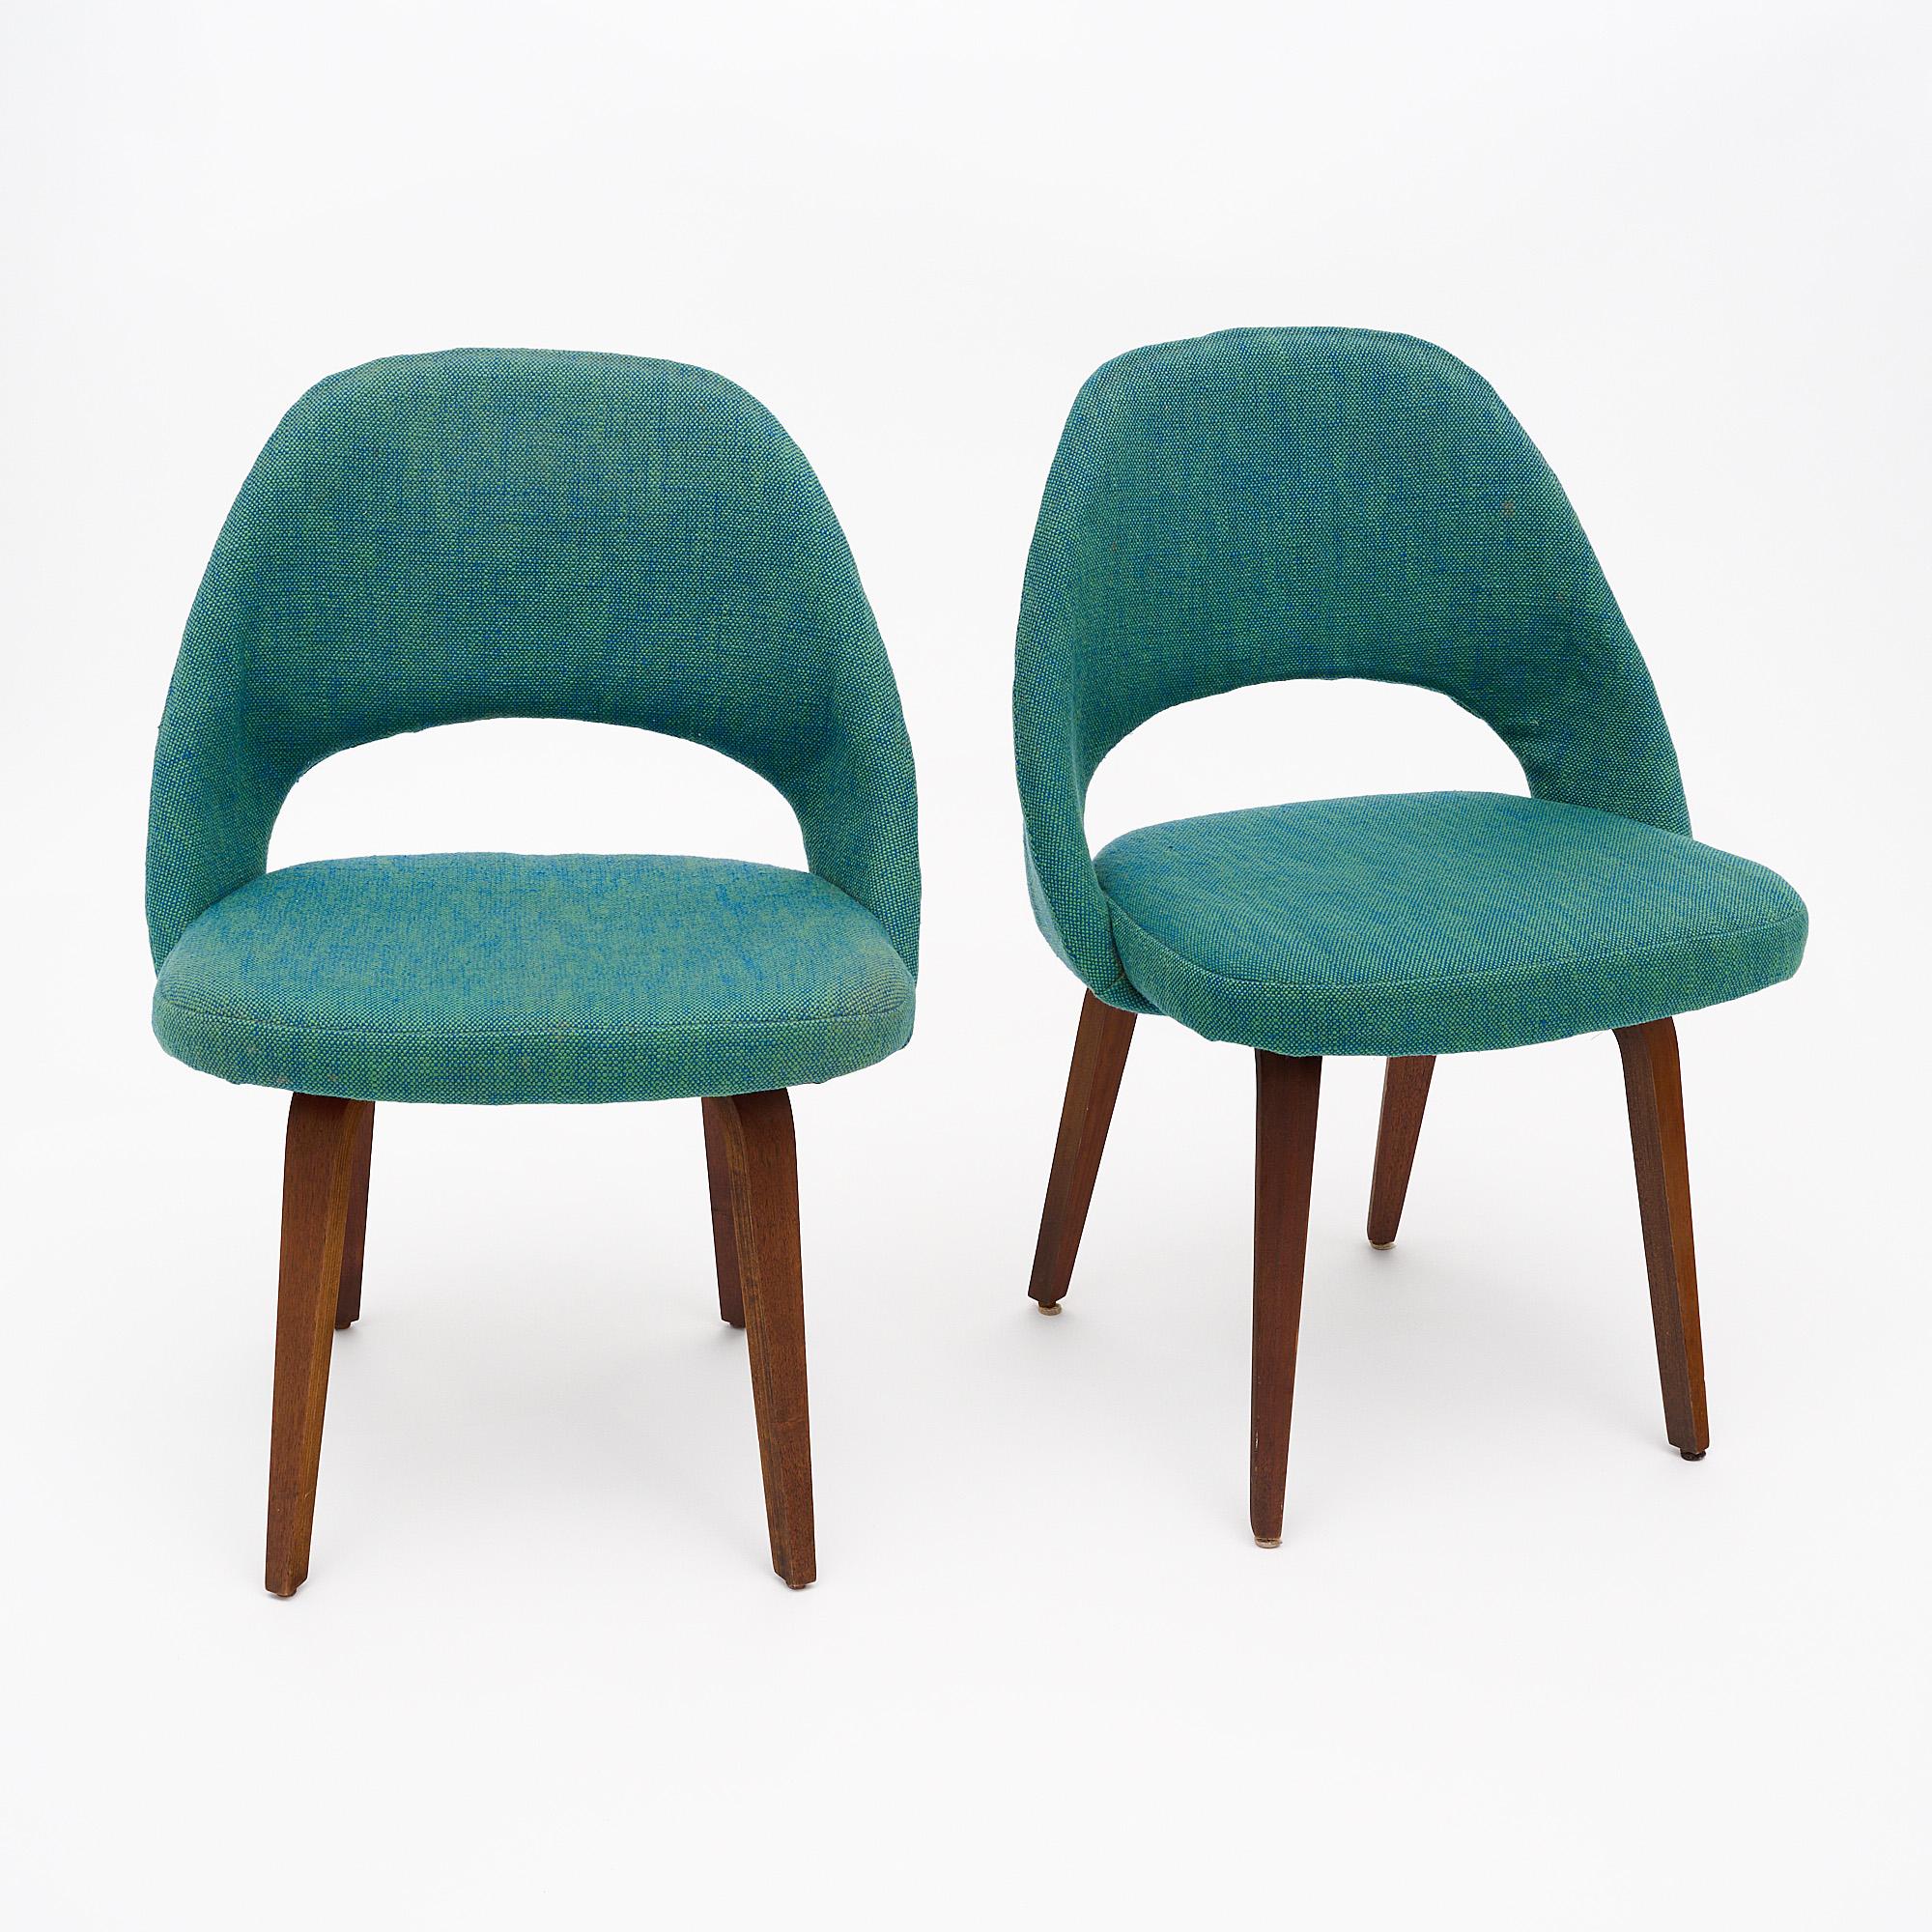 Paar Stühle von Knoll mit original grünem und blauem Webstoff in gutem Zustand. Der Sarrinen Chefsessel, der ursprünglich in fast allen Inneneinrichtungen von Florence Knoll zu finden war, ist bis heute ein beliebtes Design. Die Beine sind aus